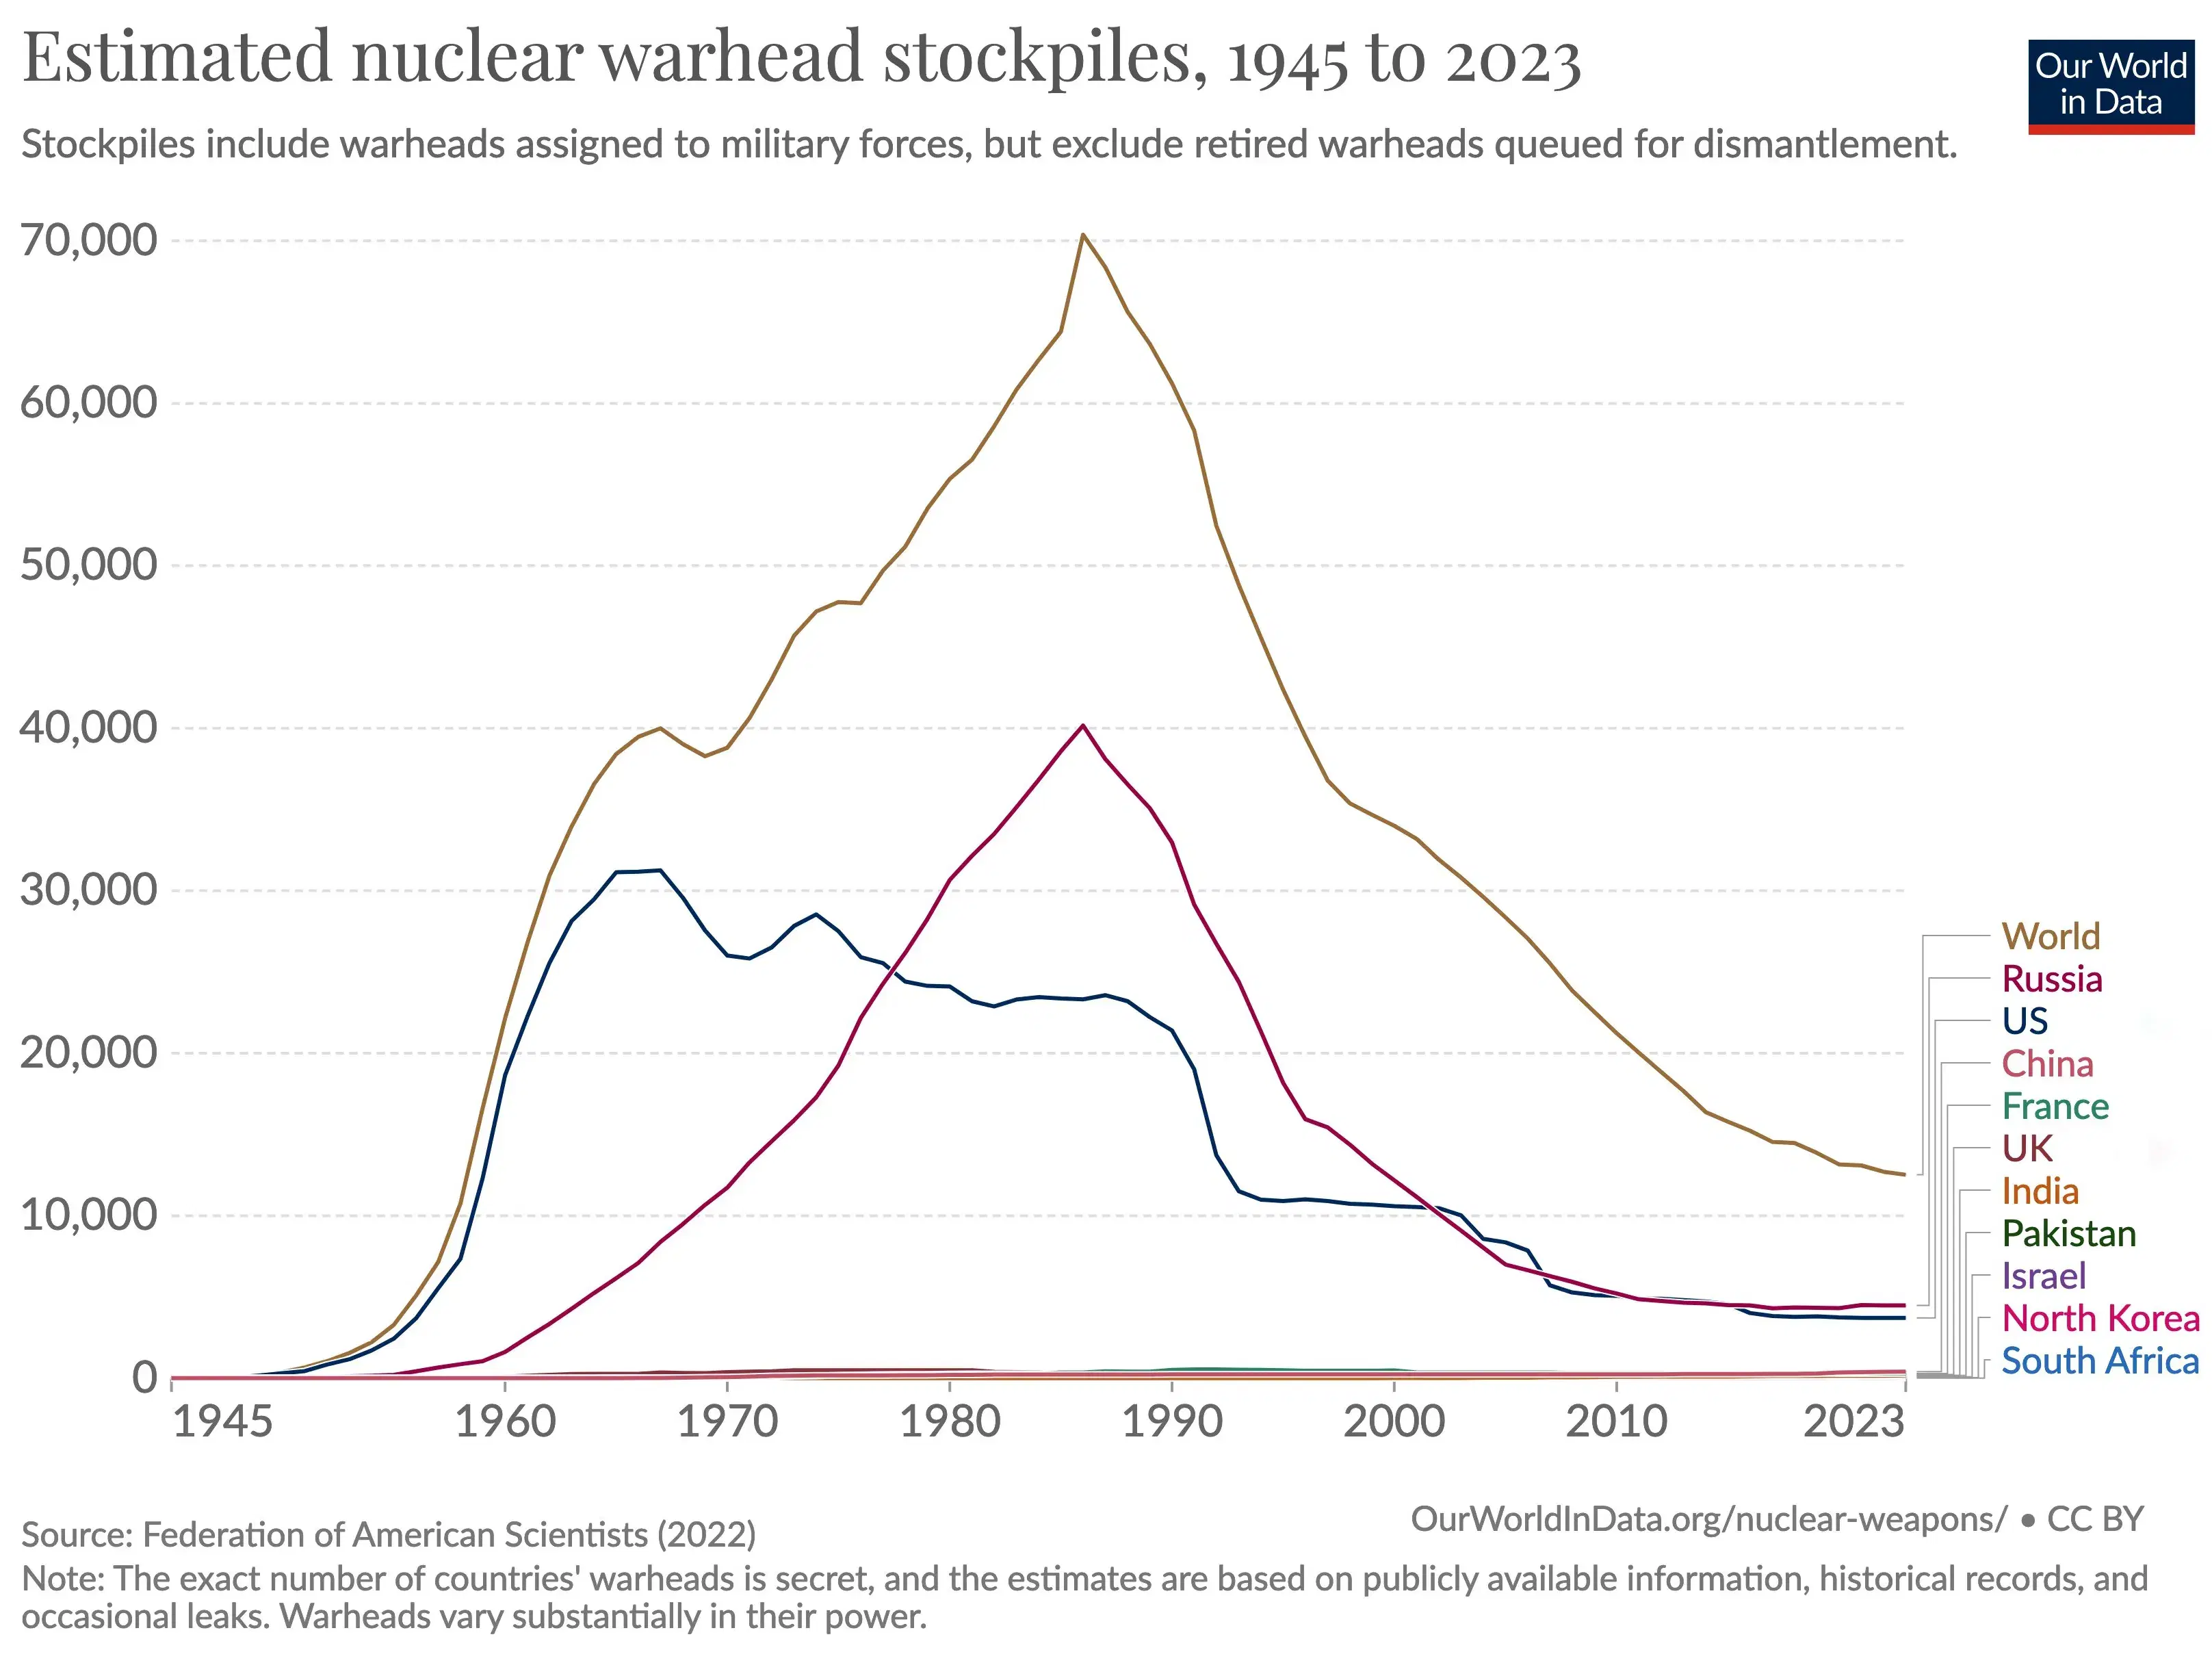 A Global Look at Nuclear Warhead Stockpiles